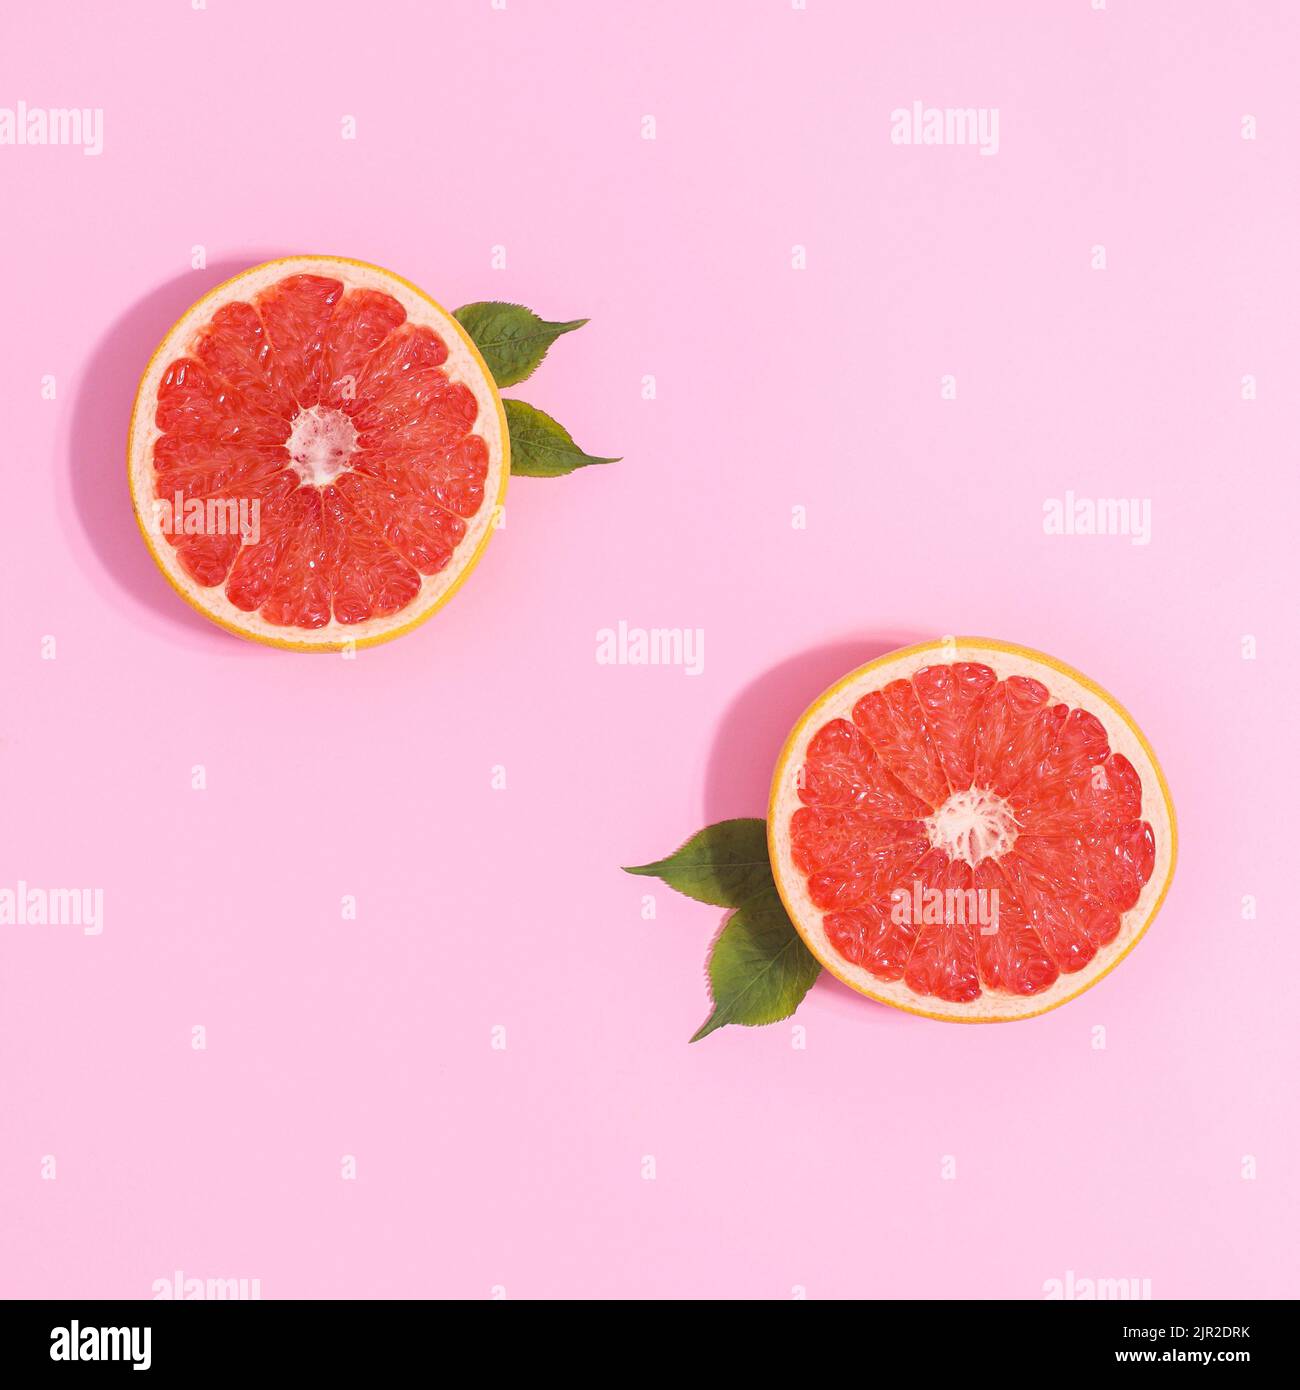 Zwei halbe Stücke Grapefruit mit grünen Blättern auf pastellrosa Hintergrund. Kreative Kopierfläche flach liegend Stockfoto